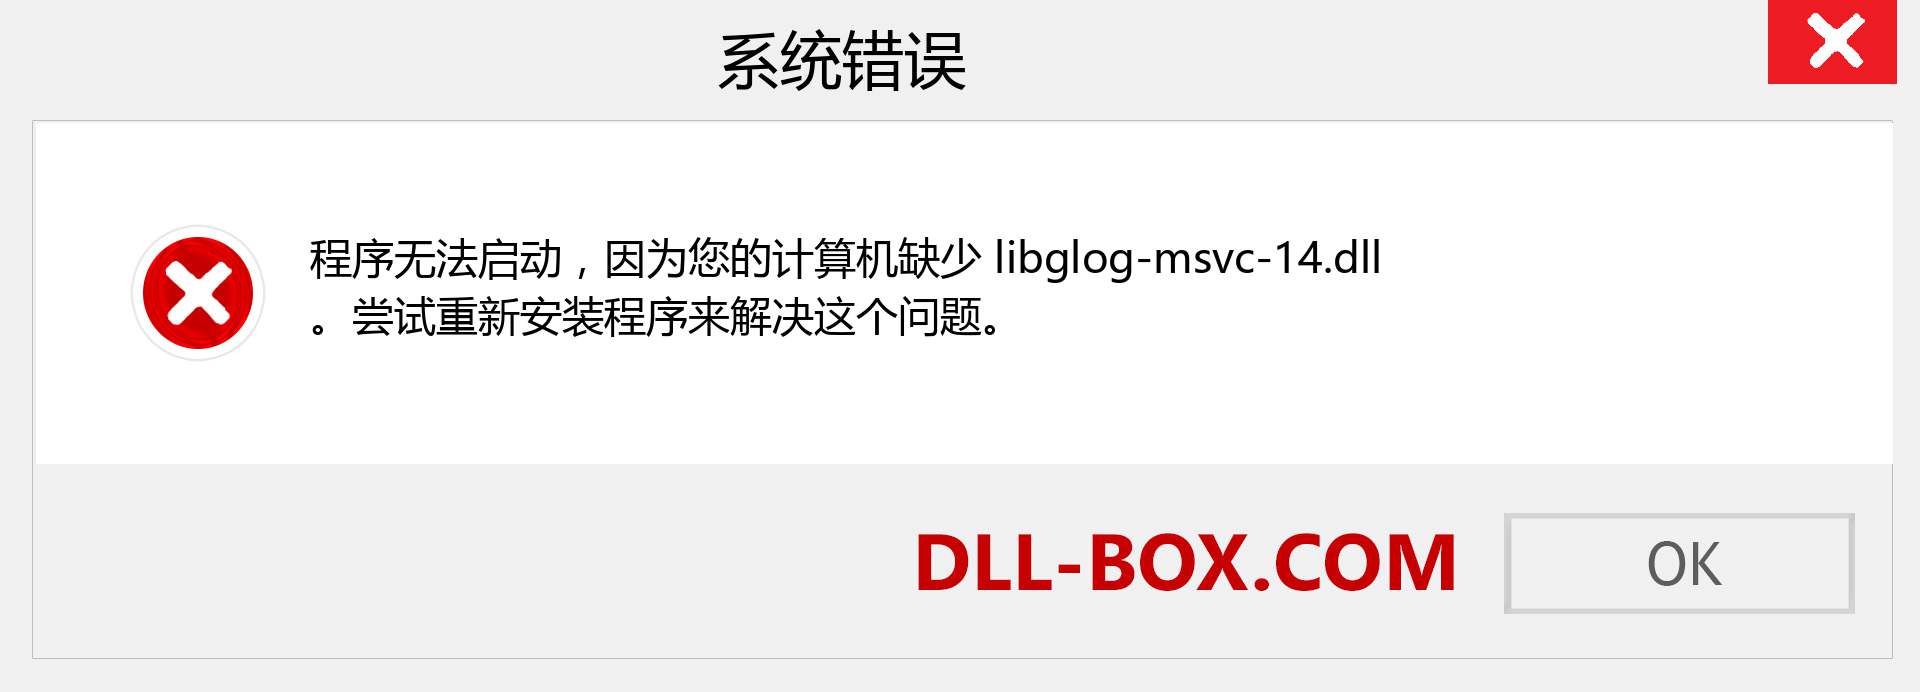 libglog-msvc-14.dll 文件丢失？。 适用于 Windows 7、8、10 的下载 - 修复 Windows、照片、图像上的 libglog-msvc-14 dll 丢失错误